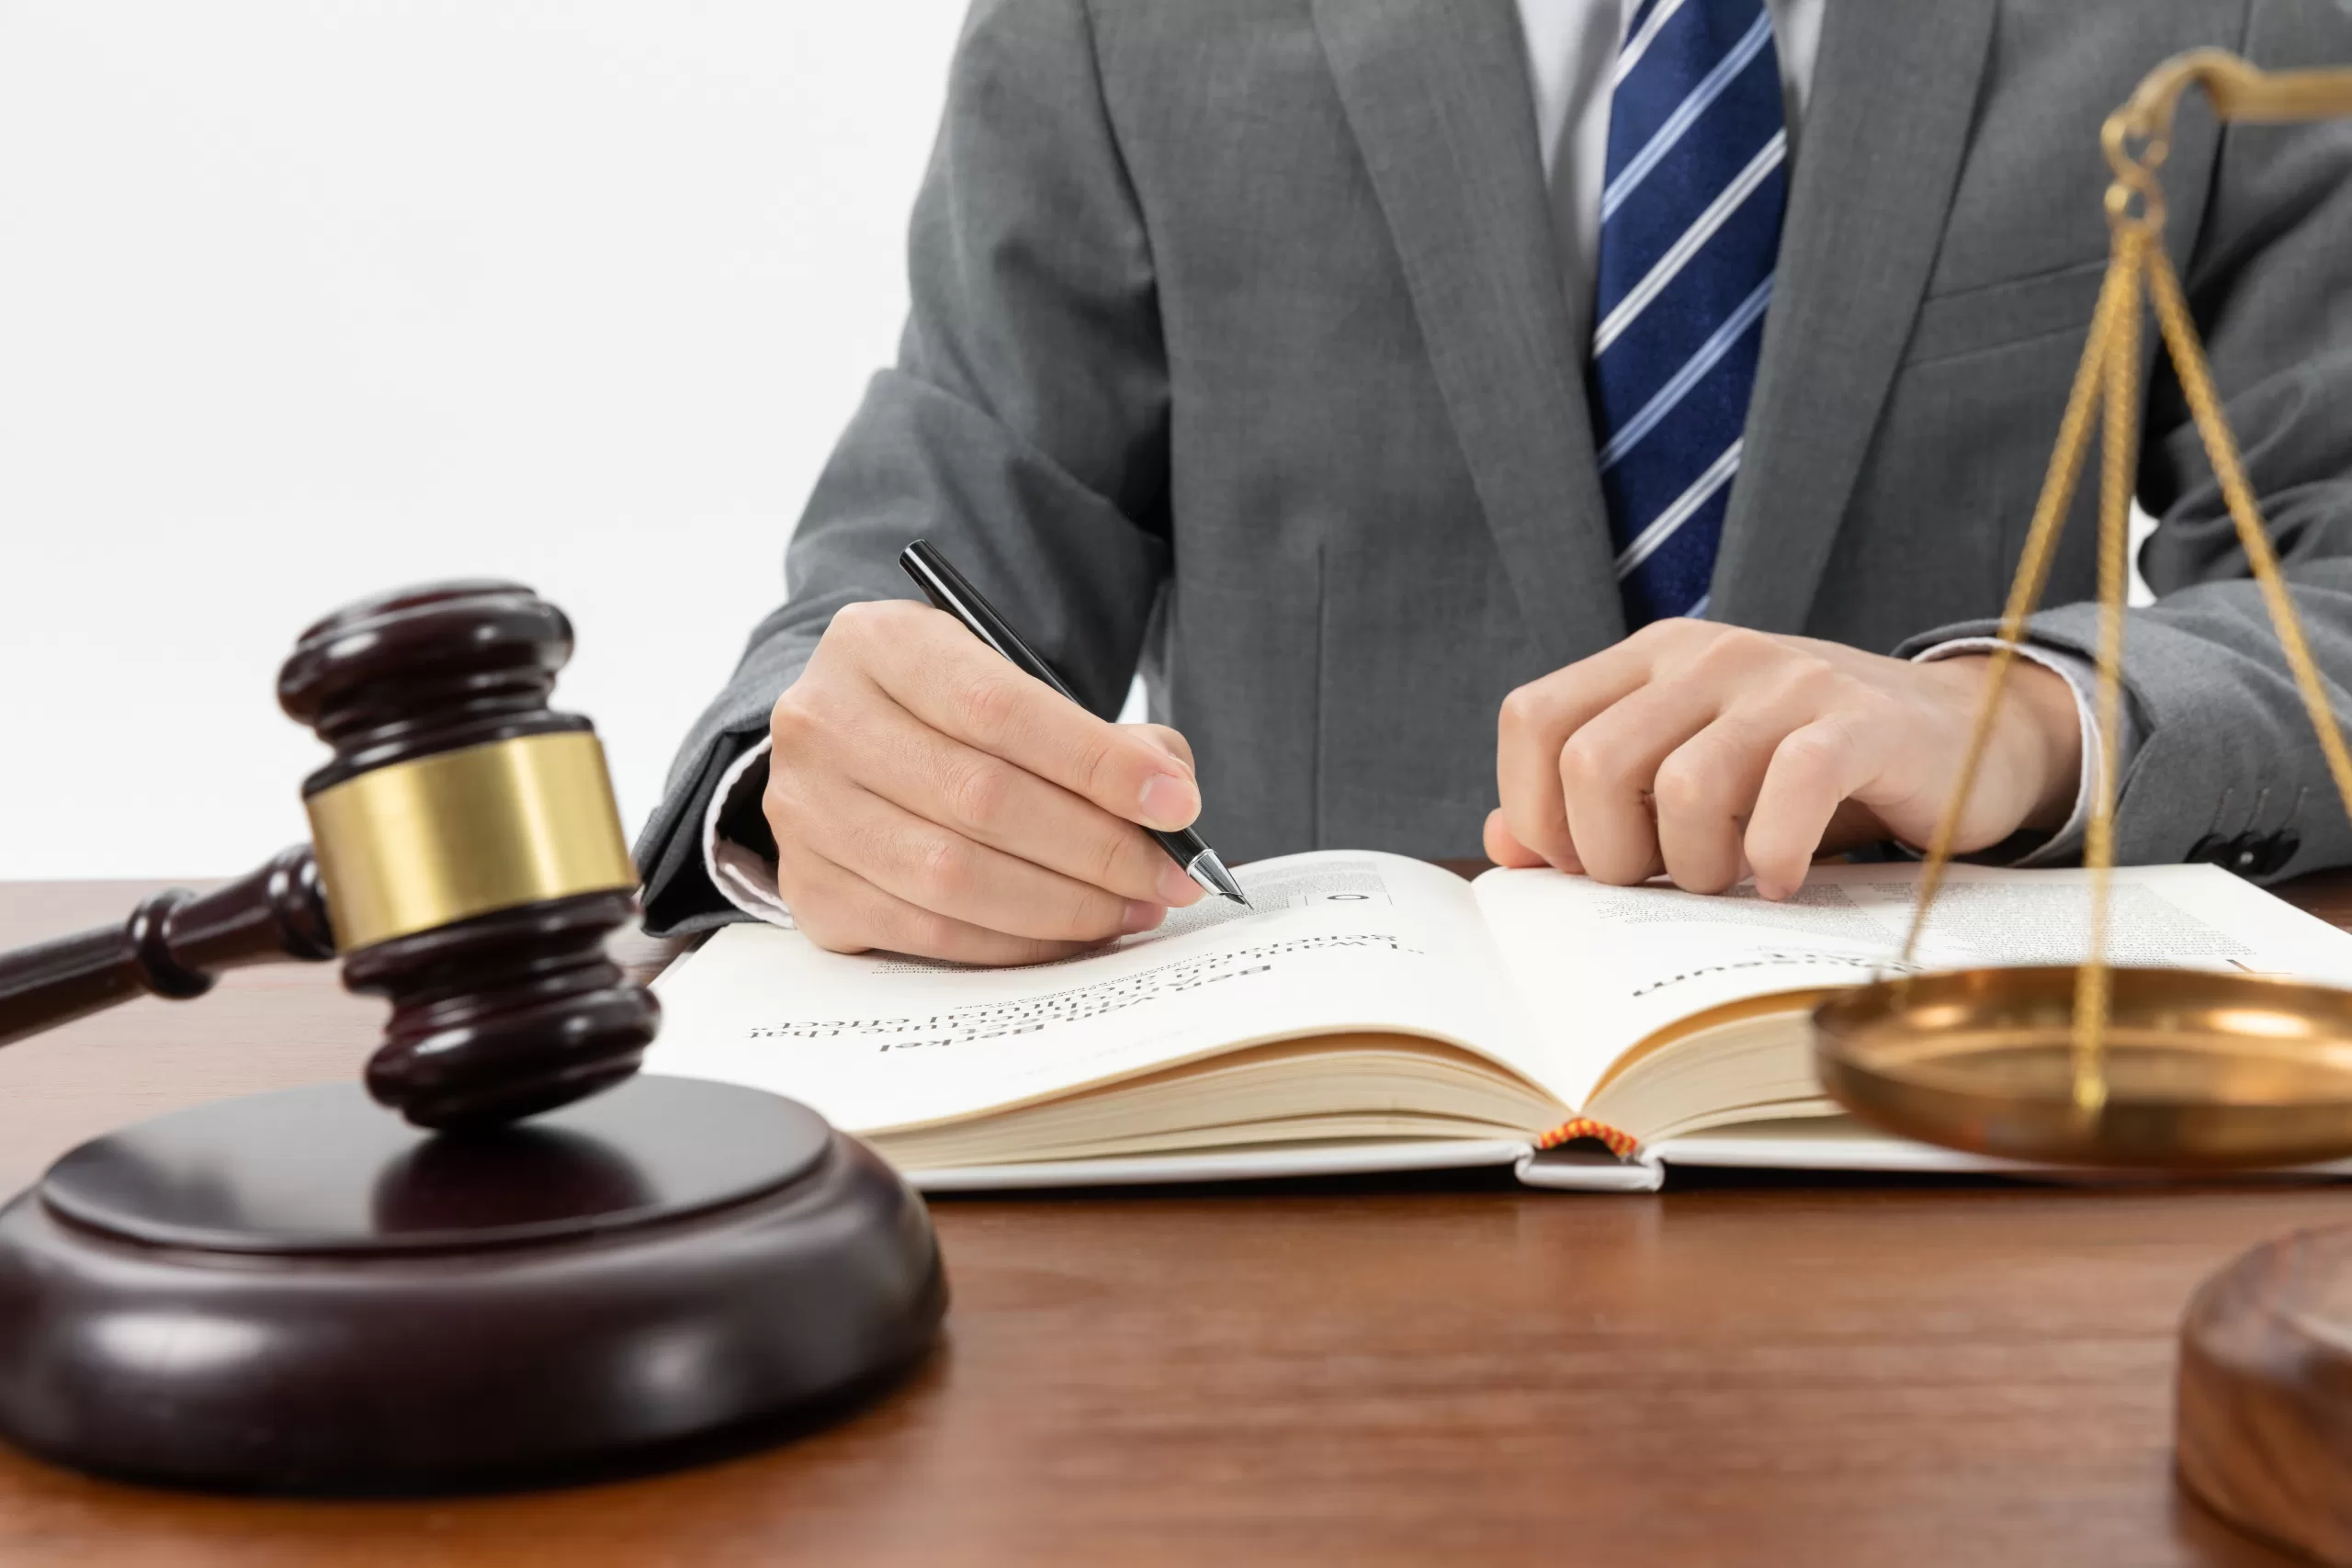 إتقان فن المناظرات في العمل القانوني والقضائي